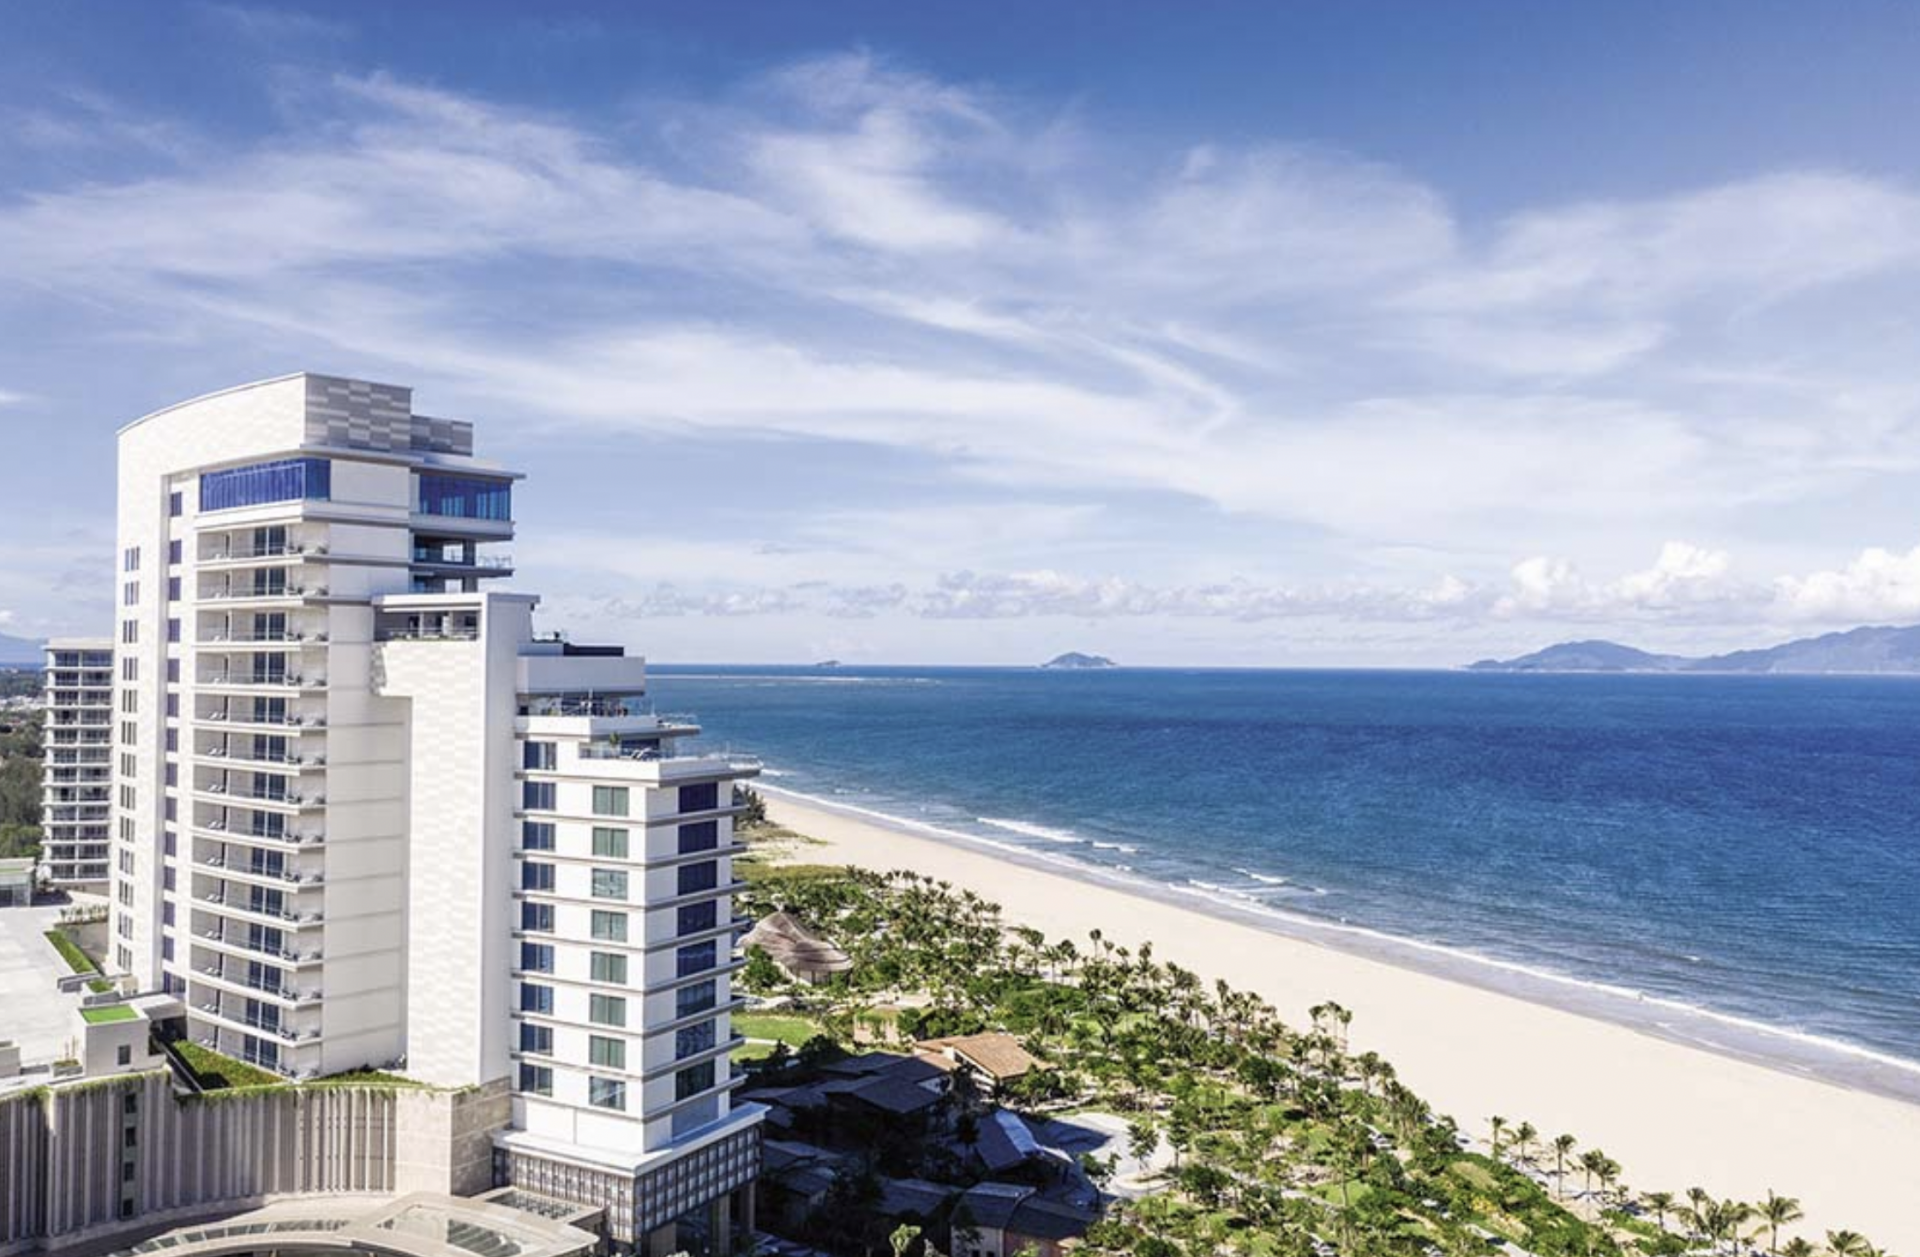 尽管度假酒店和公寓式酒店市场仍存在瓶颈，但一系列国际酒店品牌正在逐步扩大在越南的业务。